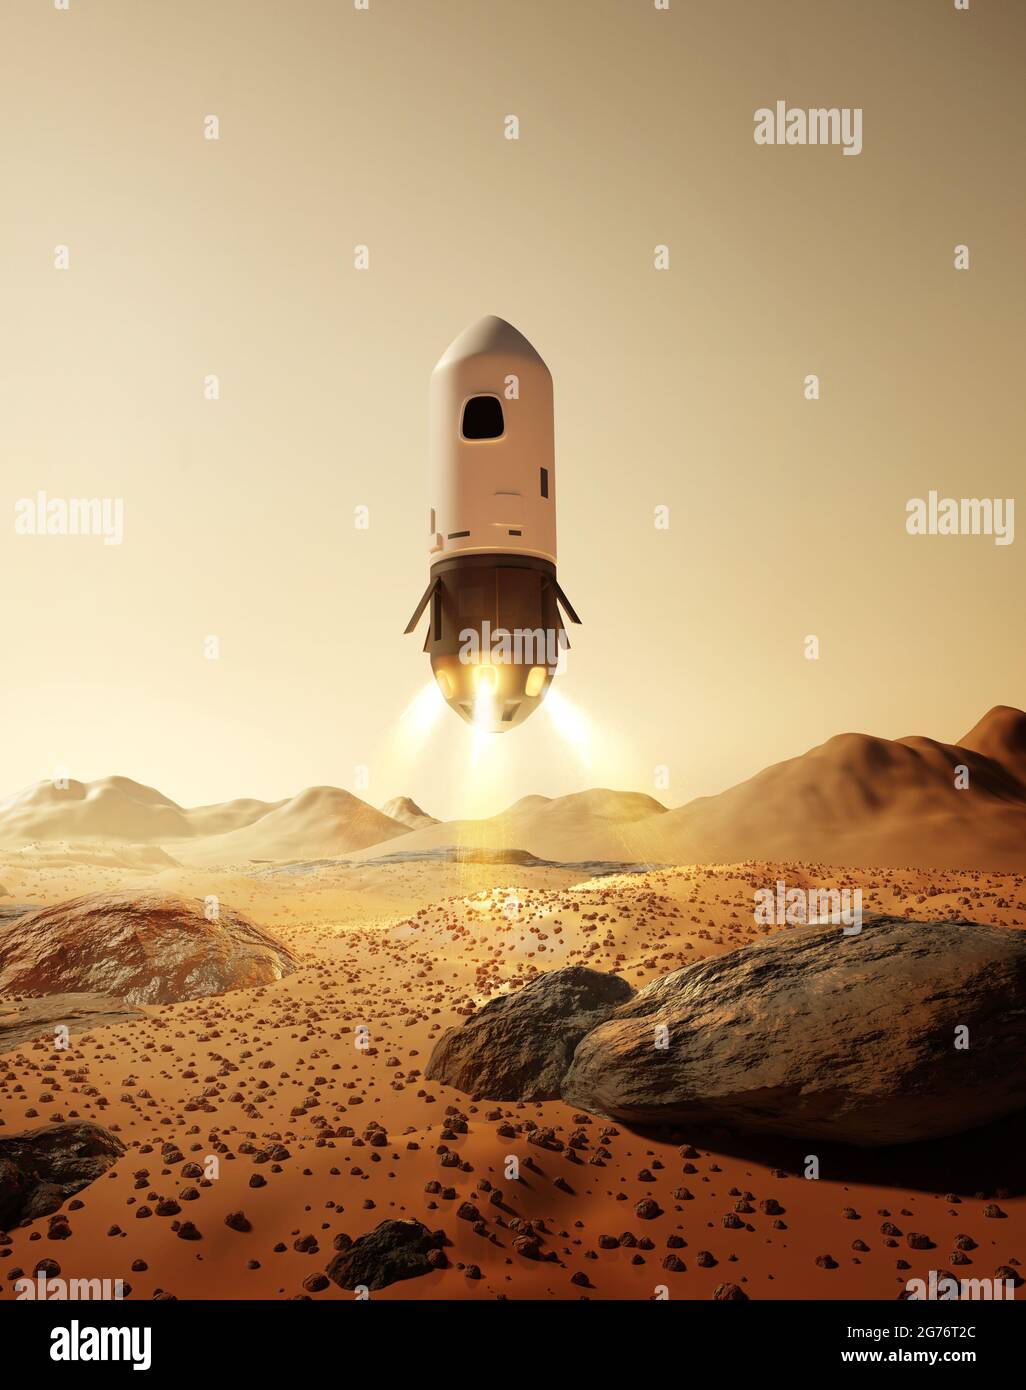 Eine Rakete mit Astronauten, die auf der Oberfläche des Planeten Mars landet. Zukünftige Weltraumexplorationsmissionen. 3D-Illustration. Stockfoto